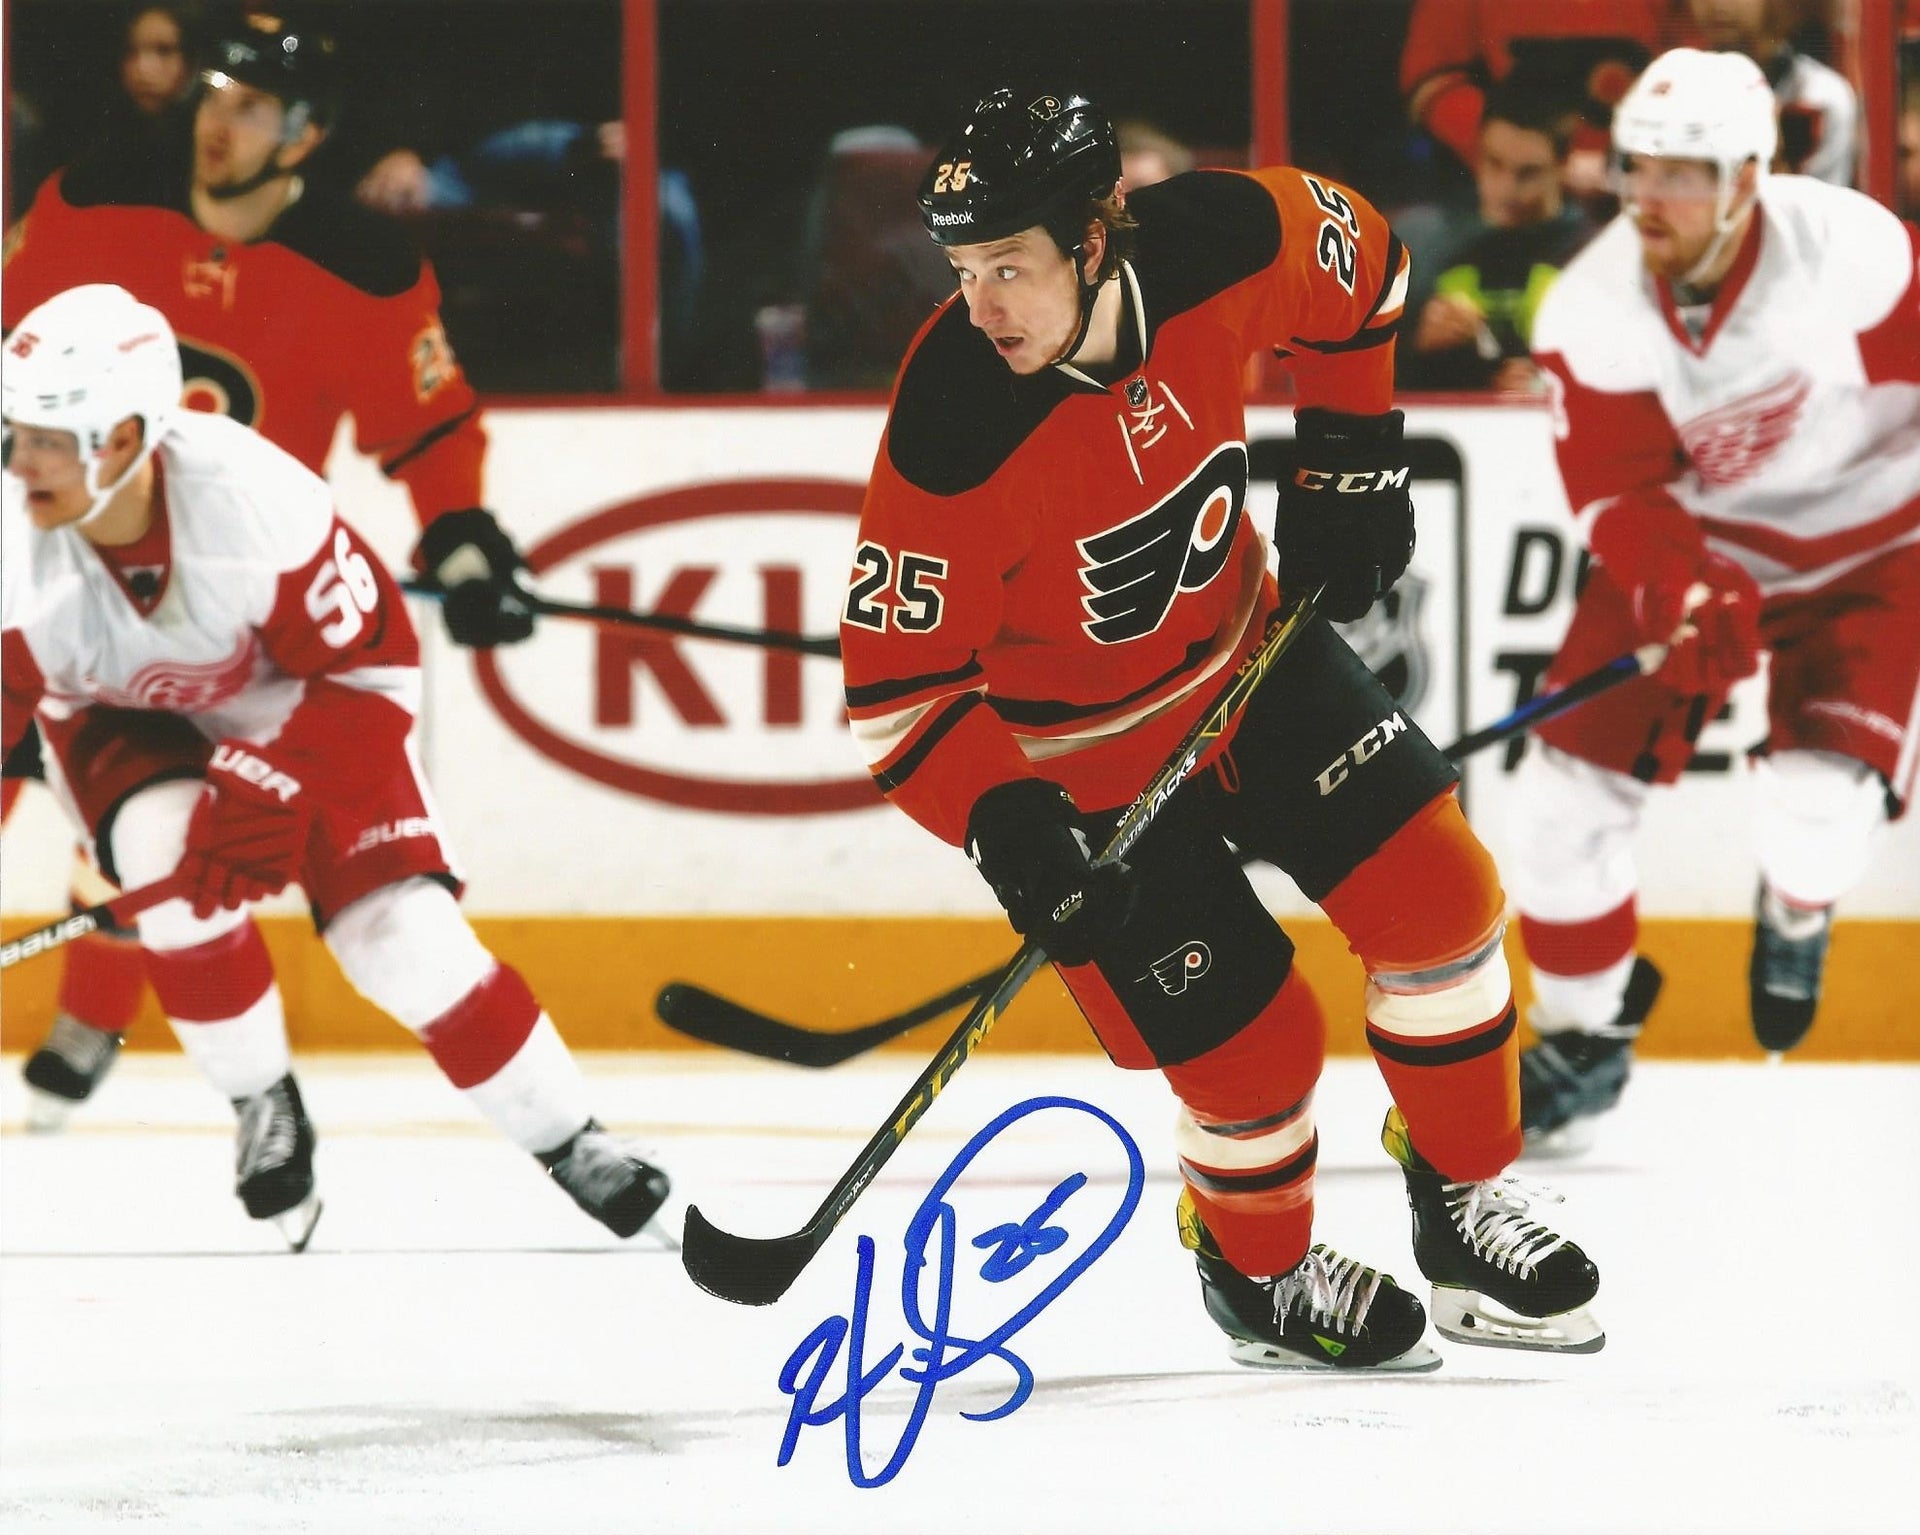 Ryan White Skating Philadelphia Flyers Autographed NHL Hockey Photo - Dynasty Sports & Framing 